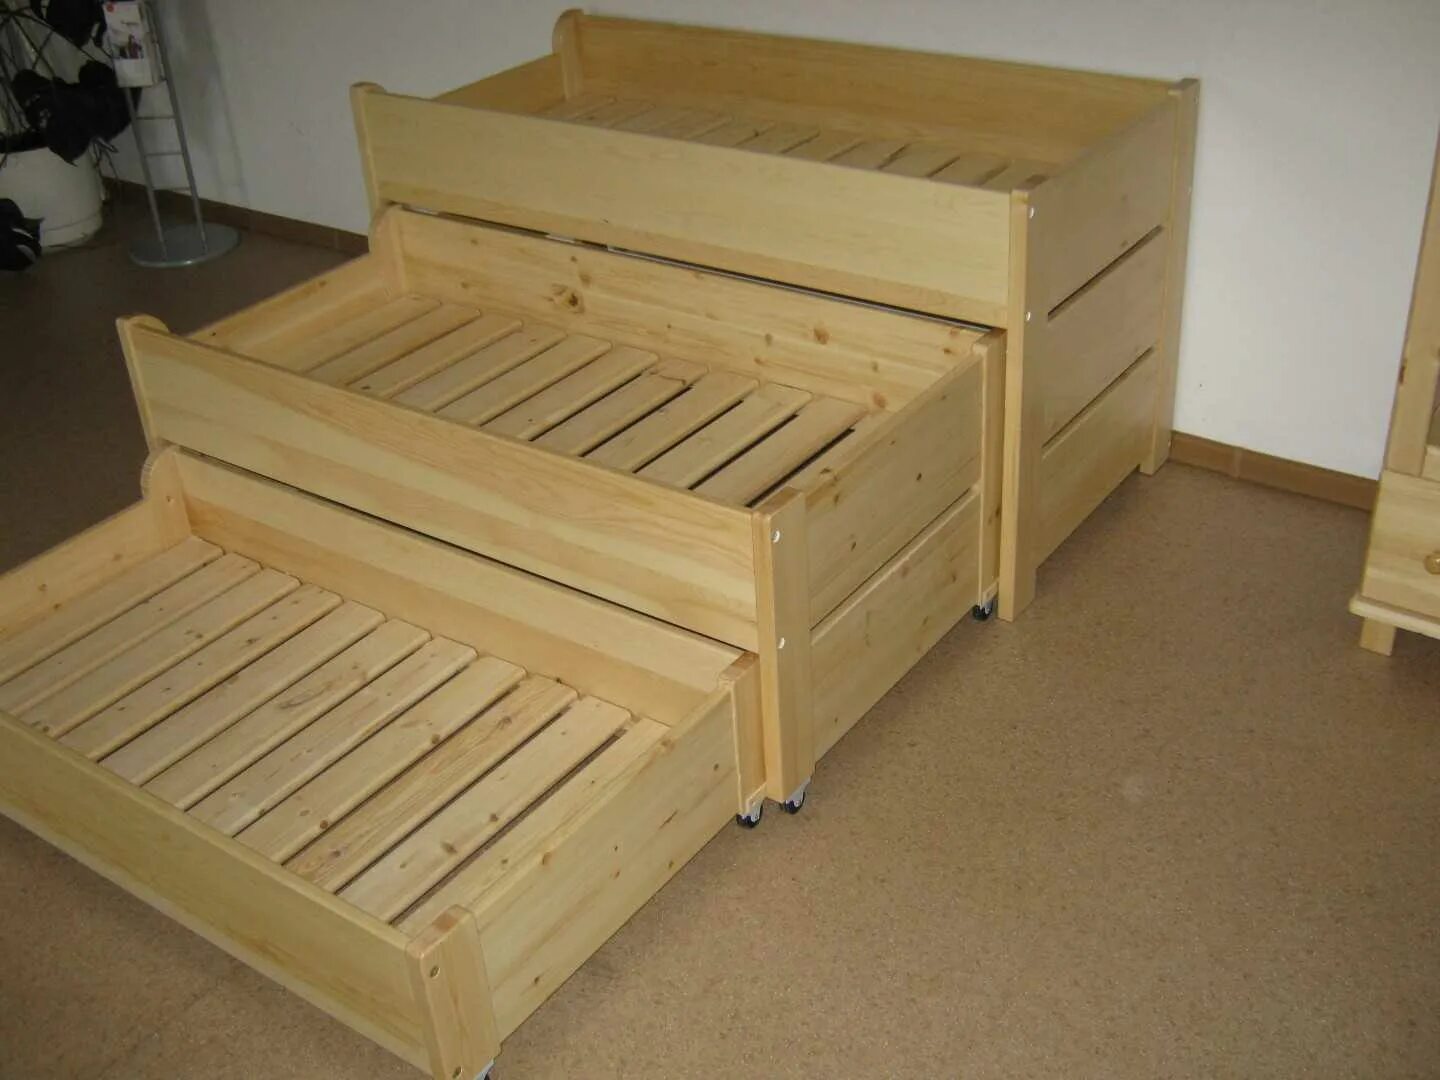 Сборка выдвижной кровати. Выкатная деревянная кровать. Выдвижная деревянная кровать. Детская вакантная кровать из дерева. Выкатная кровать дерево.